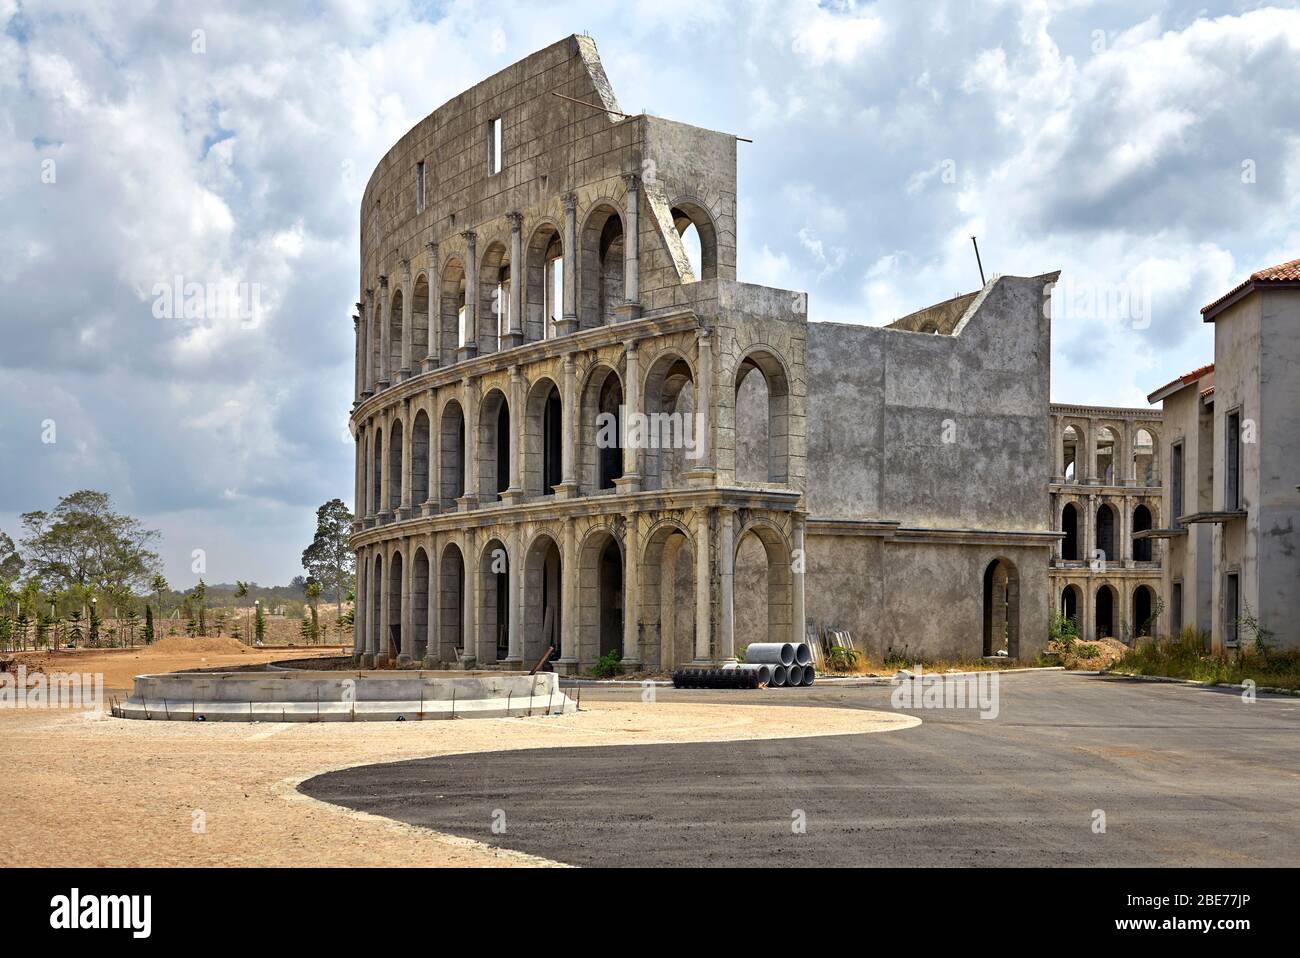 Kolosseum oder Kolosseum. Ein ovales Amphitheater im Zentrum der Stadt Rom, Italien, aber in Thailand als zukünftiger Ferienort und Einkaufszentrum reproduziert. Stockfoto